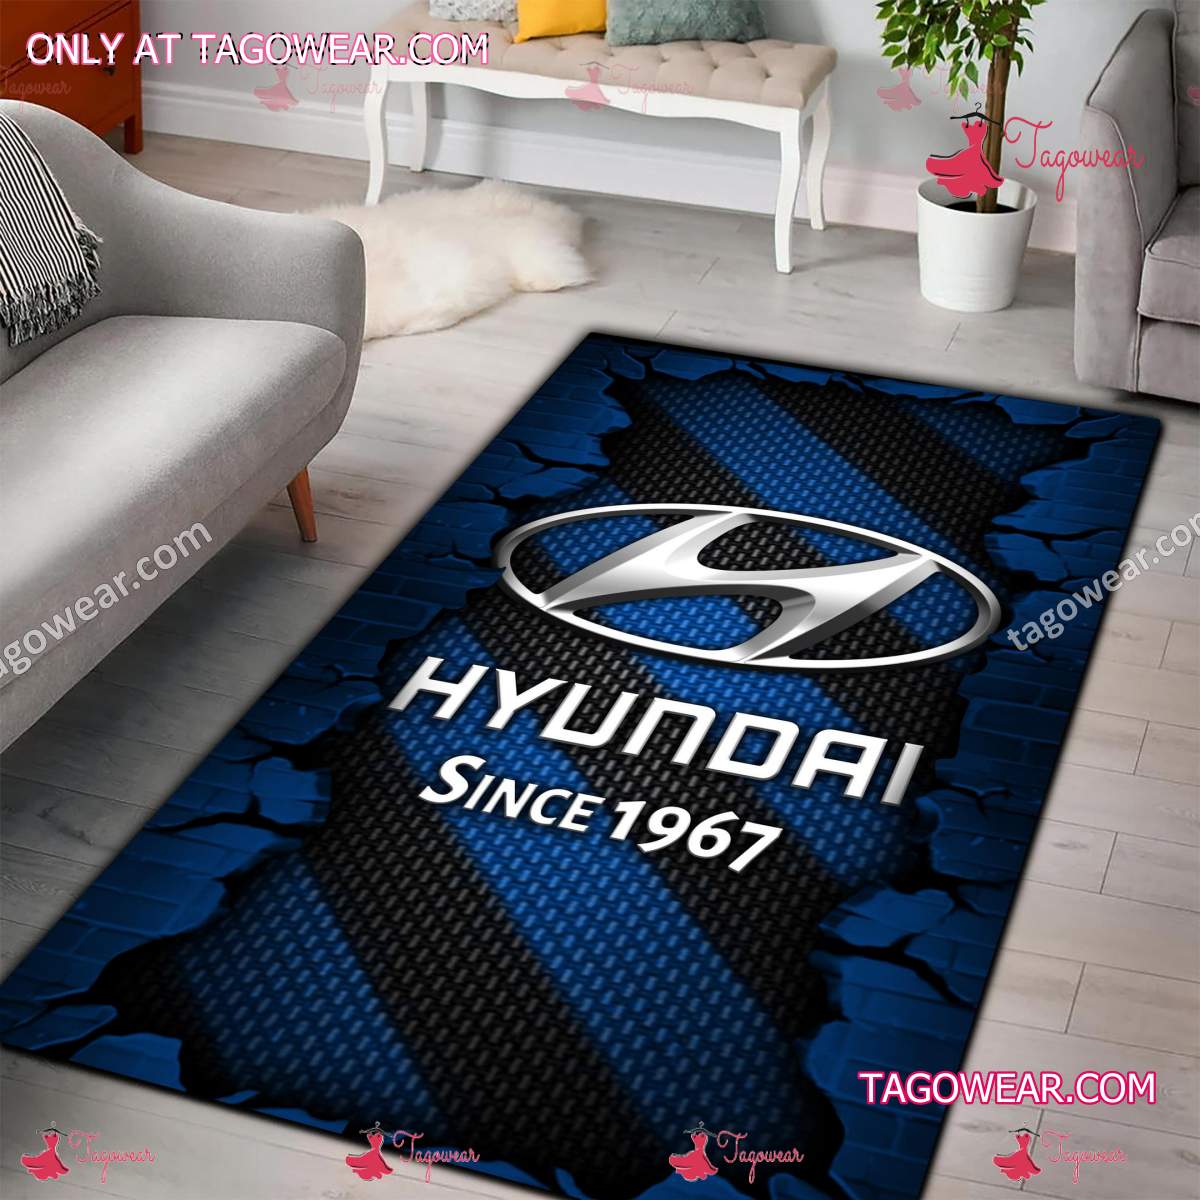 Hyundai Since 1967 Rug Carpet